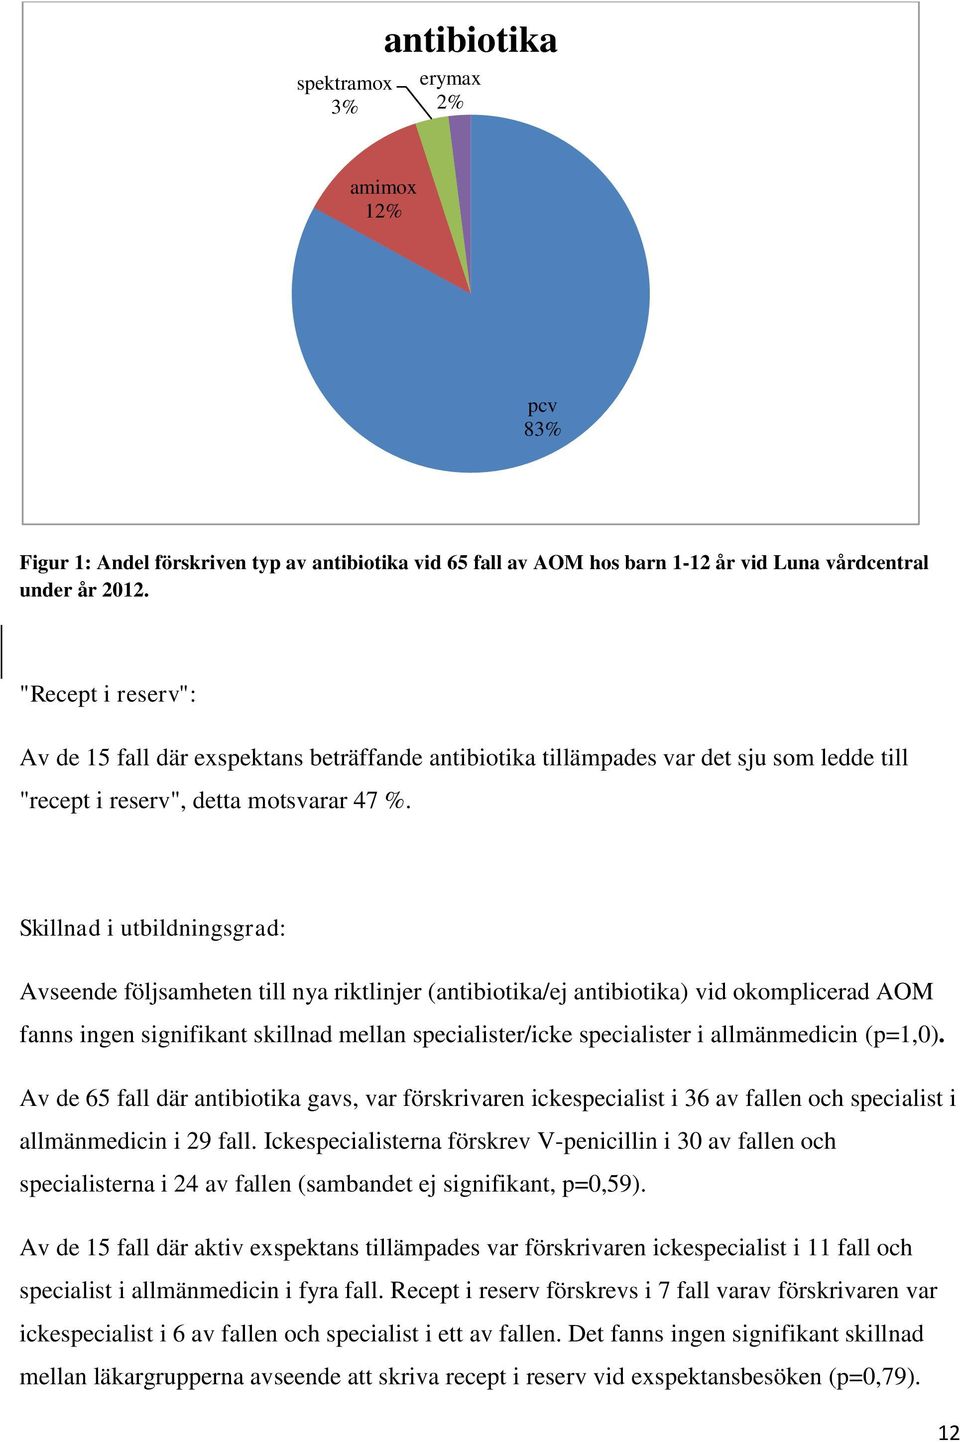 Skillnad i utbildningsgrad: Avseende följsamheten till nya riktlinjer (antibiotika/ej antibiotika) vid okomplicerad AOM fanns ingen signifikant skillnad mellan specialister/icke specialister i